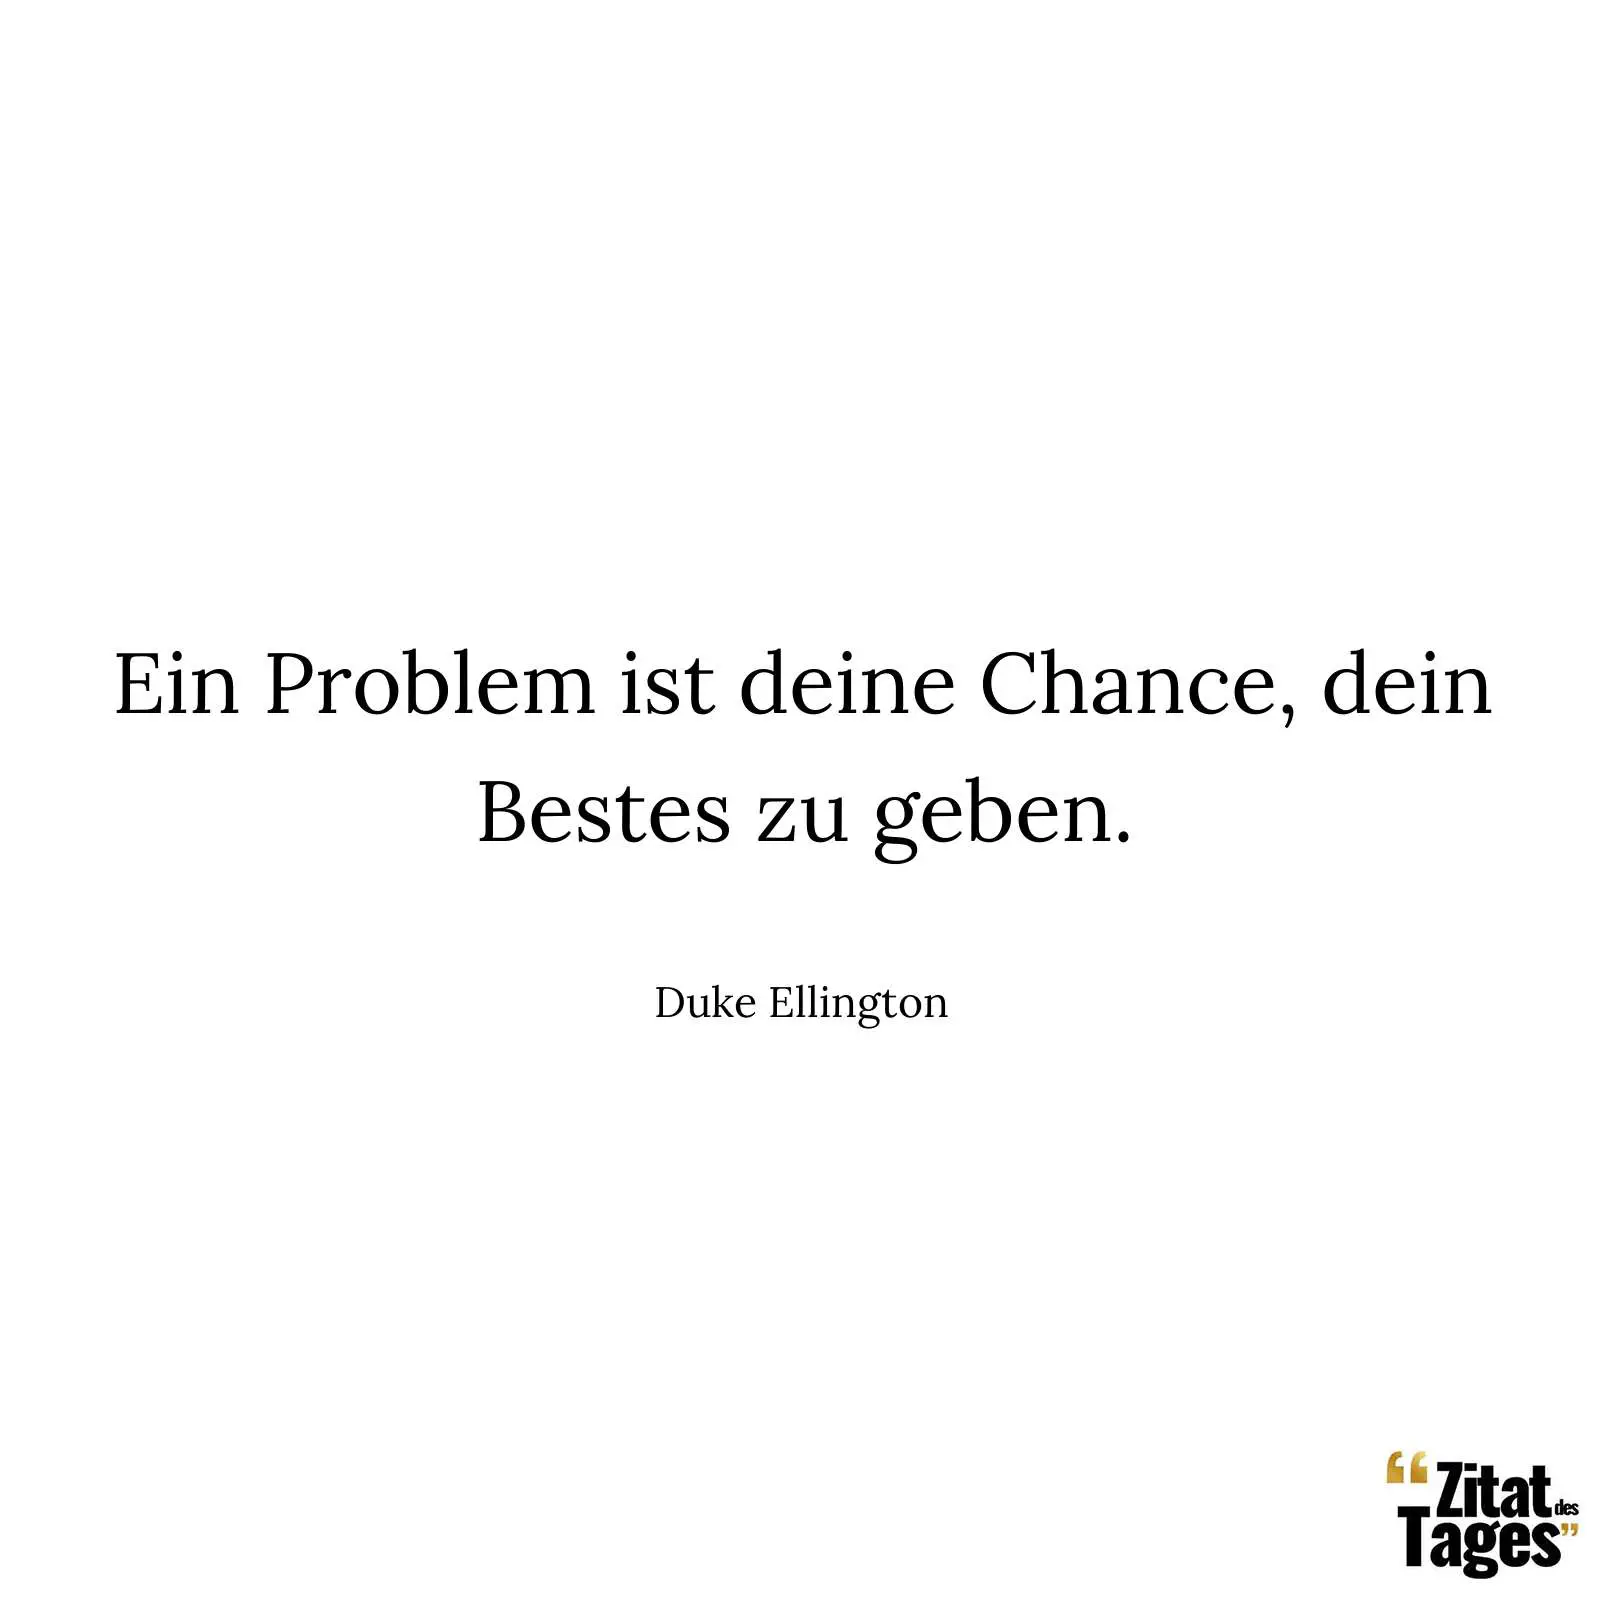 Ein Problem ist deine Chance, dein Bestes zu geben. - Duke Ellington